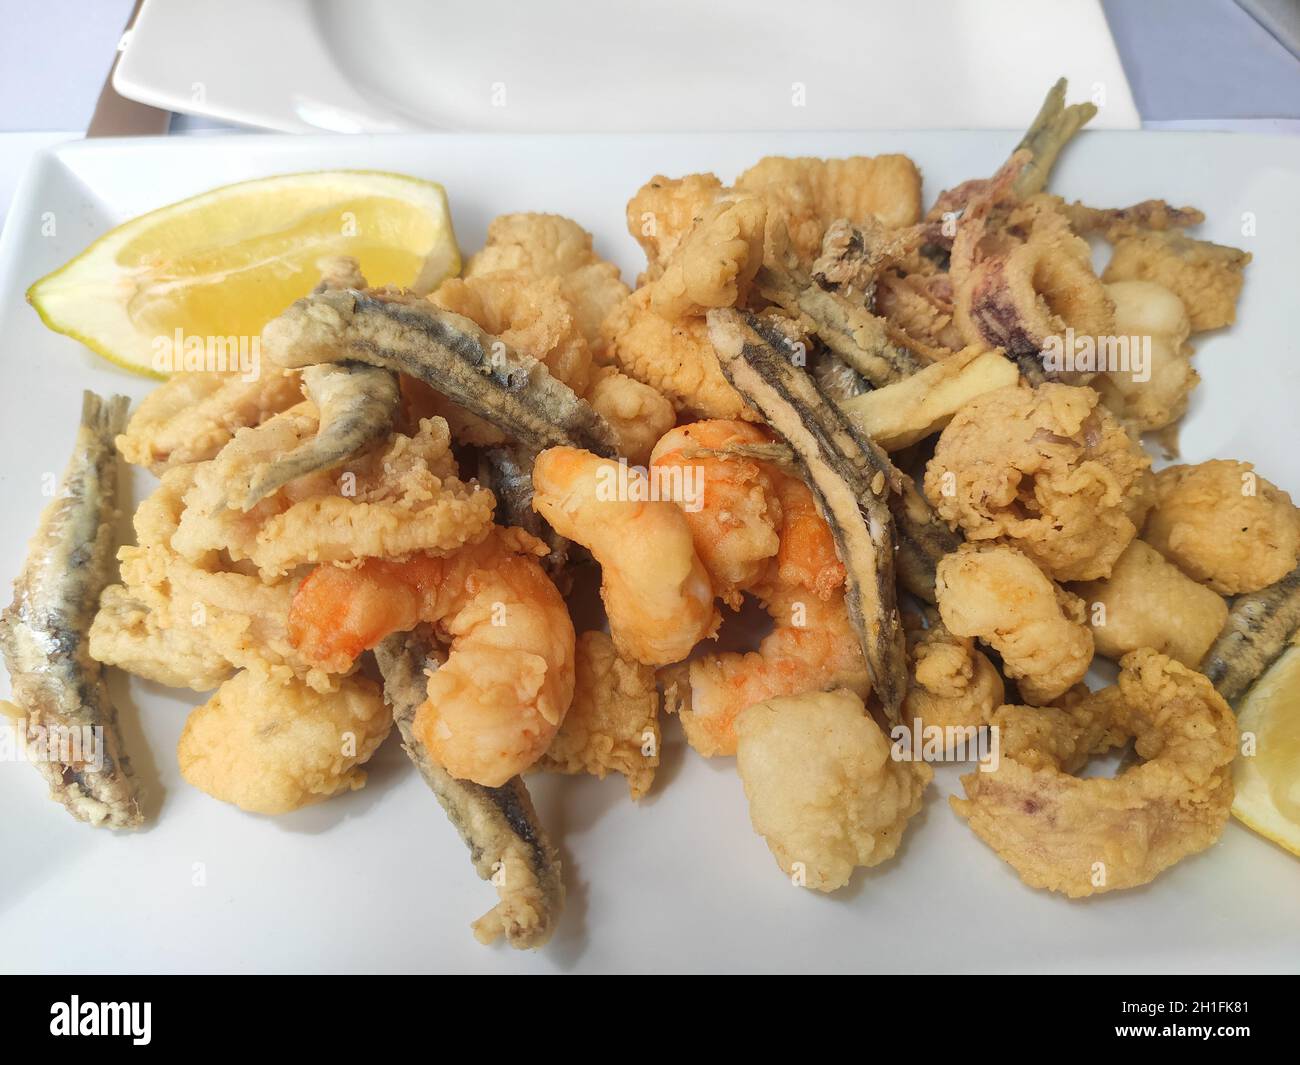 Köstlicher marinierter frittierter Fisch, typisch andalusisches Essen. Spanische Tapas mit Dogfish, Sardellen, Garnelen und Tintenfisch Stockfoto